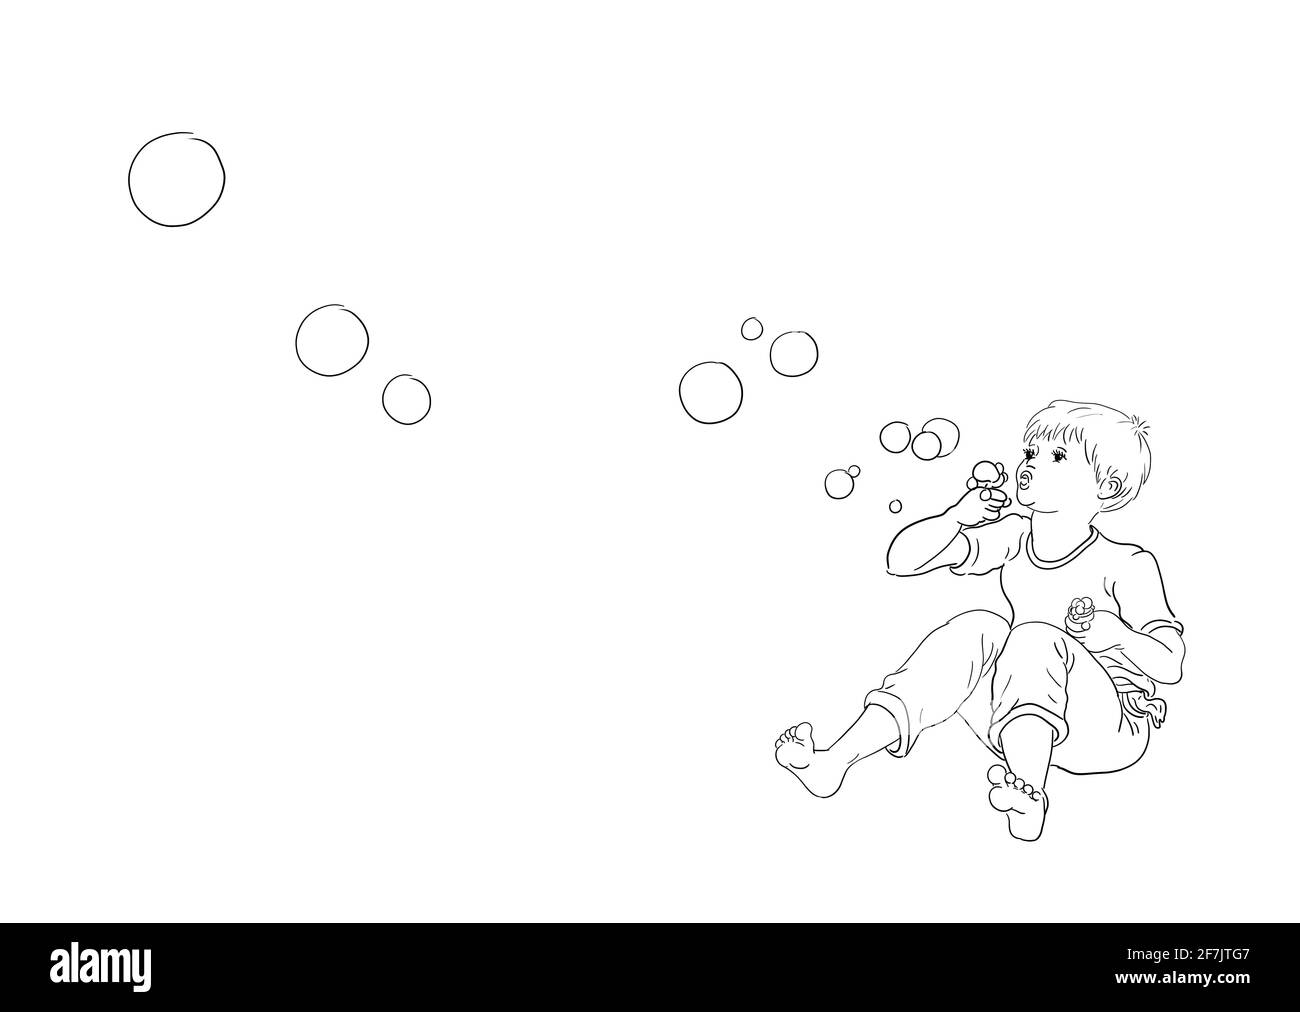 Ich liebe Seifenblasen Hintergrund weiß Junge sitzen gekreuzt barfuß  Schläge Blasen Blasen Blasen Blasen fliegen durch die Luft Flip-Flops  liegen Vor Stockfotografie - Alamy